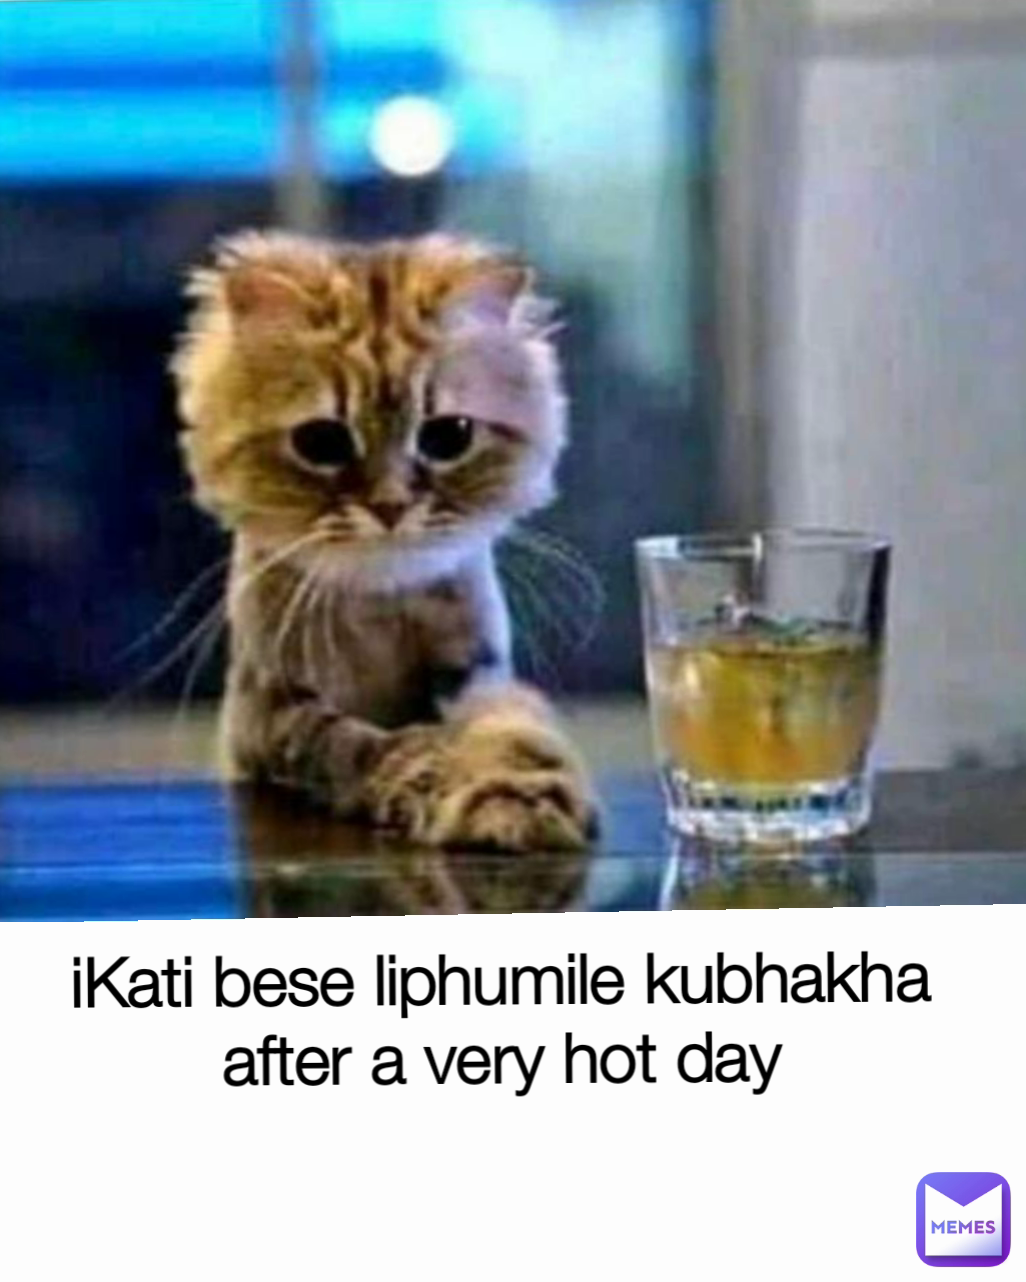 iKati bese liphumile kubhakha after a very hot day